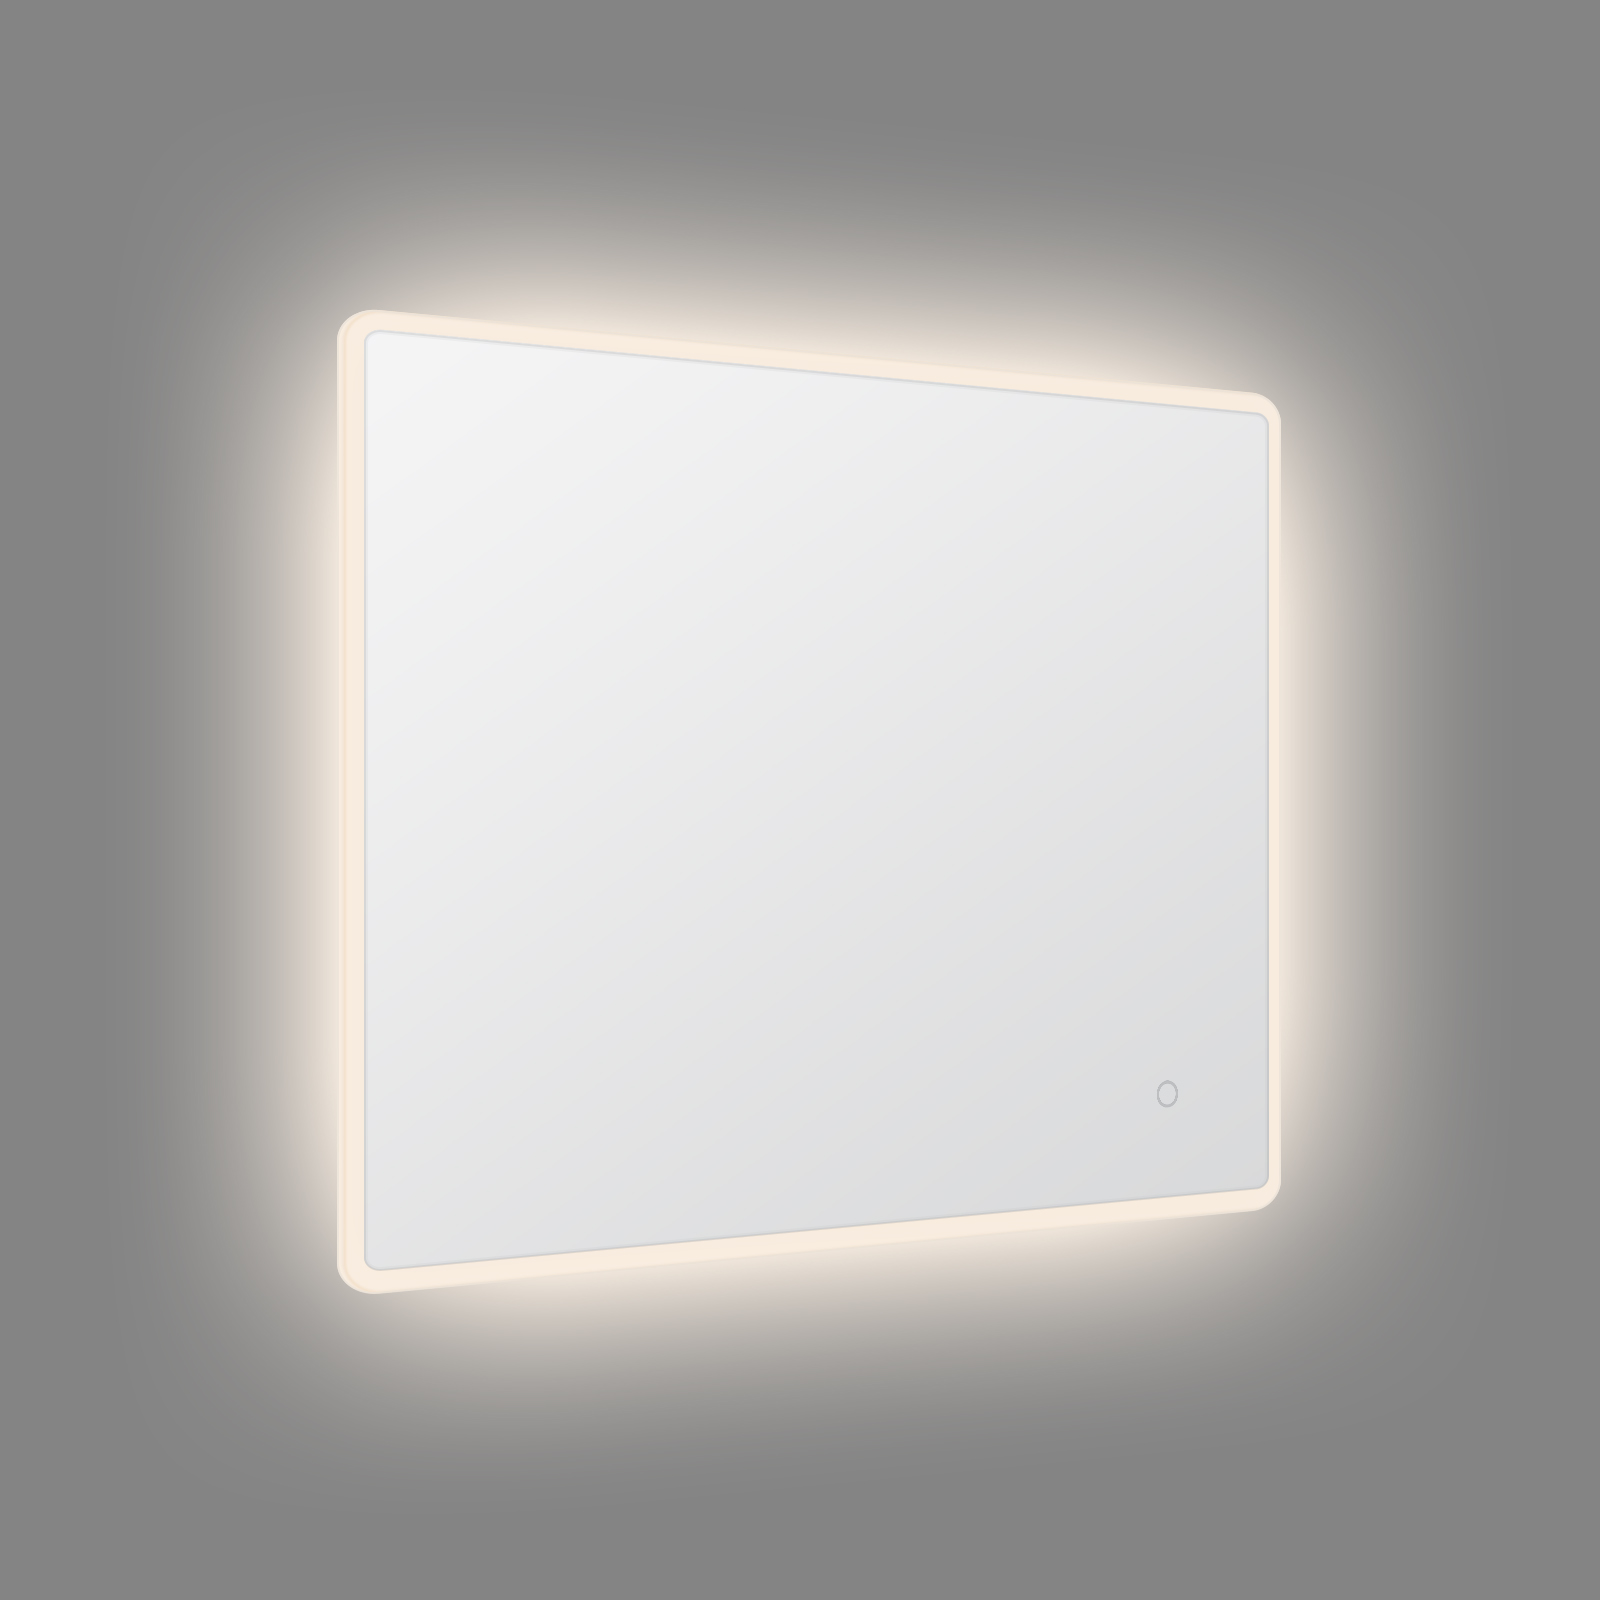 Ristküliku servaga valgustatud LED-peegel, ümmargune nurk